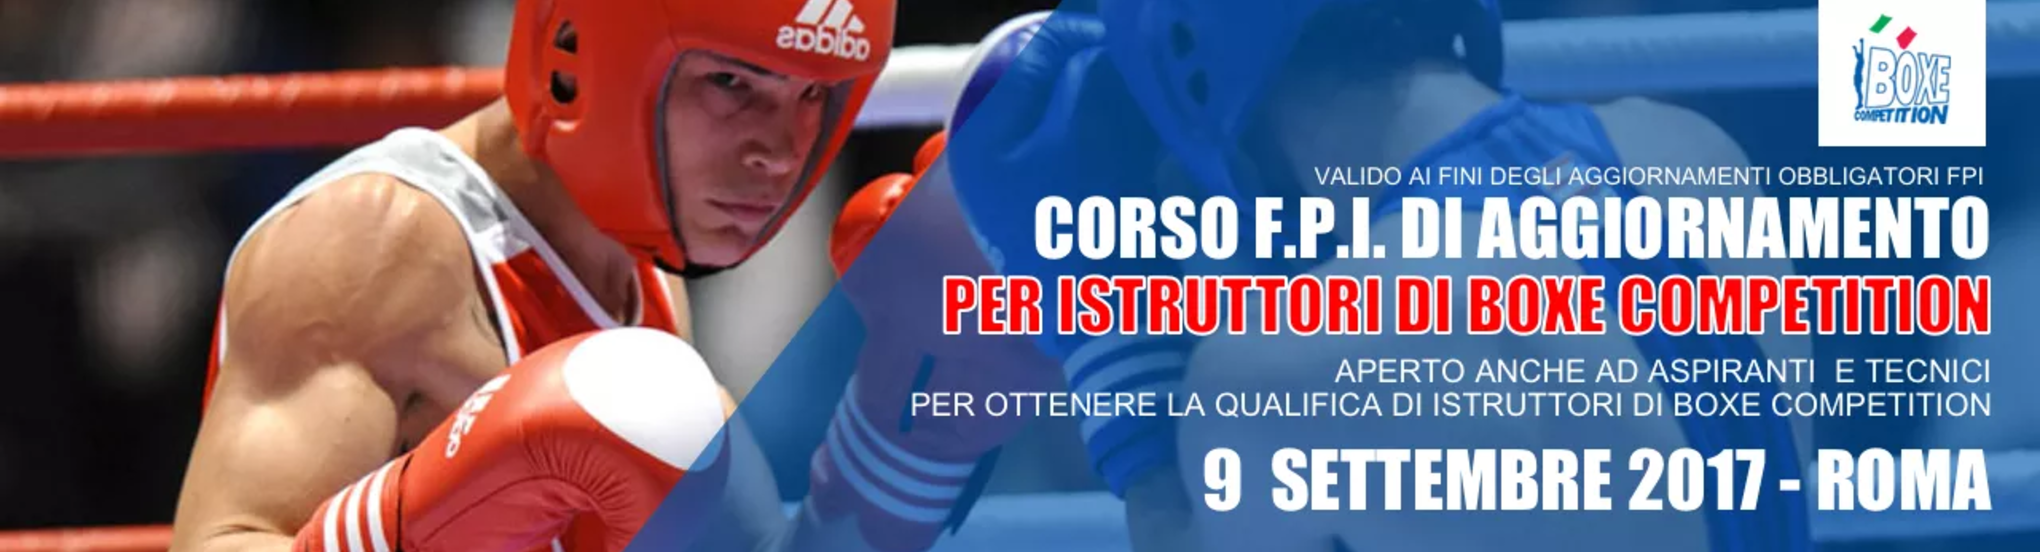 Sabato 9 Settembre a Roma Corso di Aggiornamento per Istruttori di Boxe Competition #GymBoxe